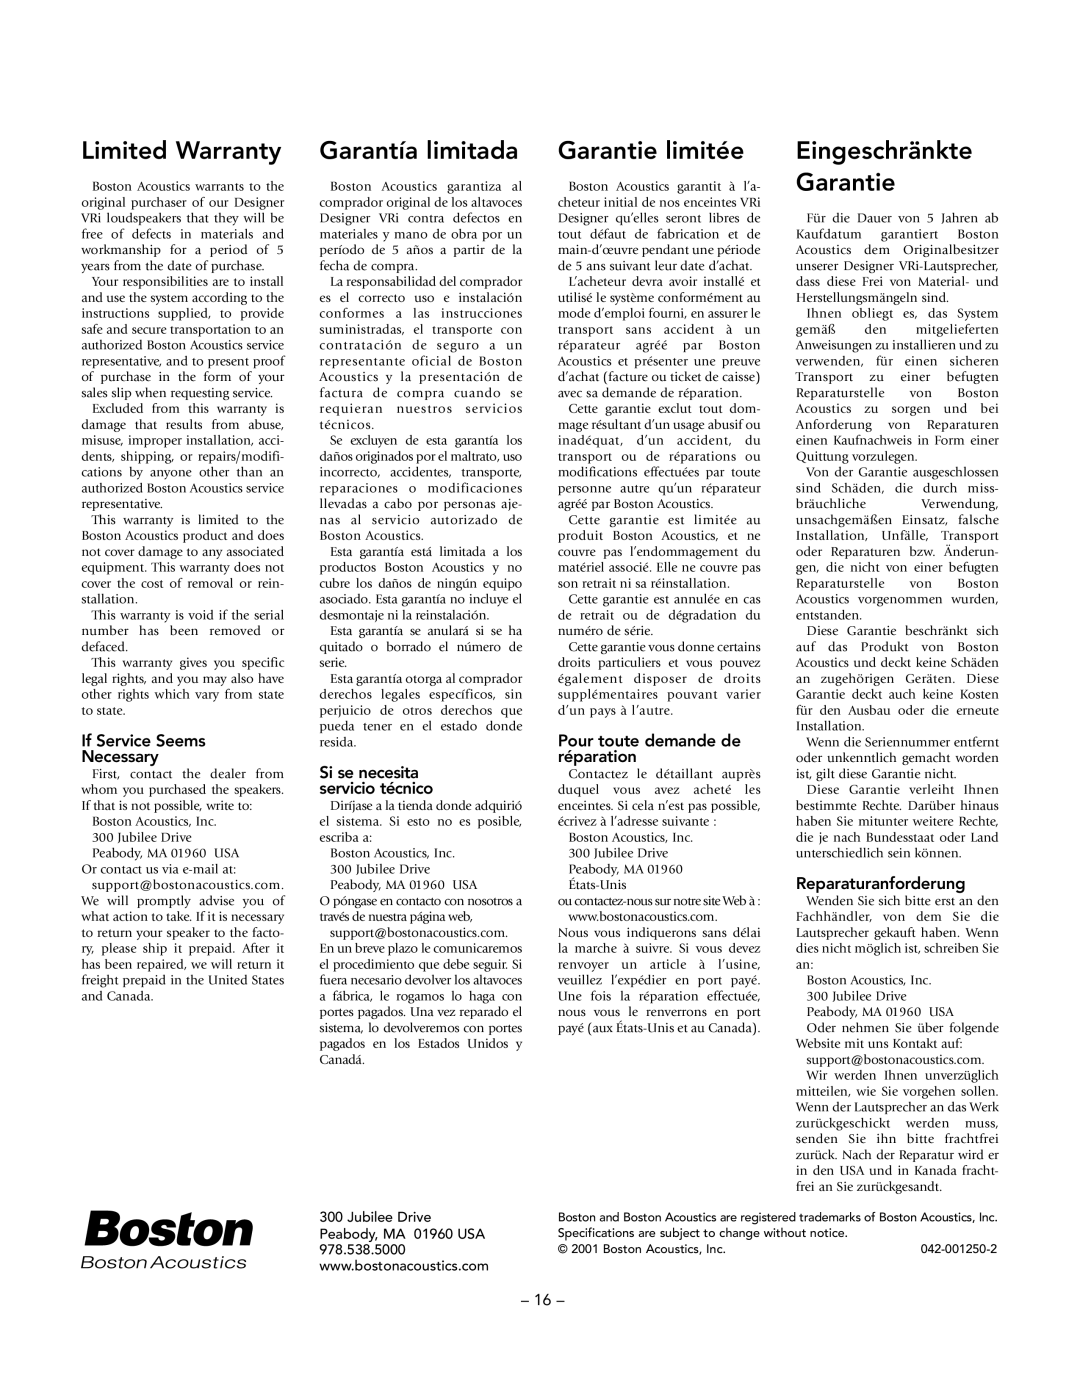 Boston Acoustics VRi593, VRi580, VRi560 manual Limited Warranty, Garantía limitada, Garantie limitée, Eingeschränkte Garantie 